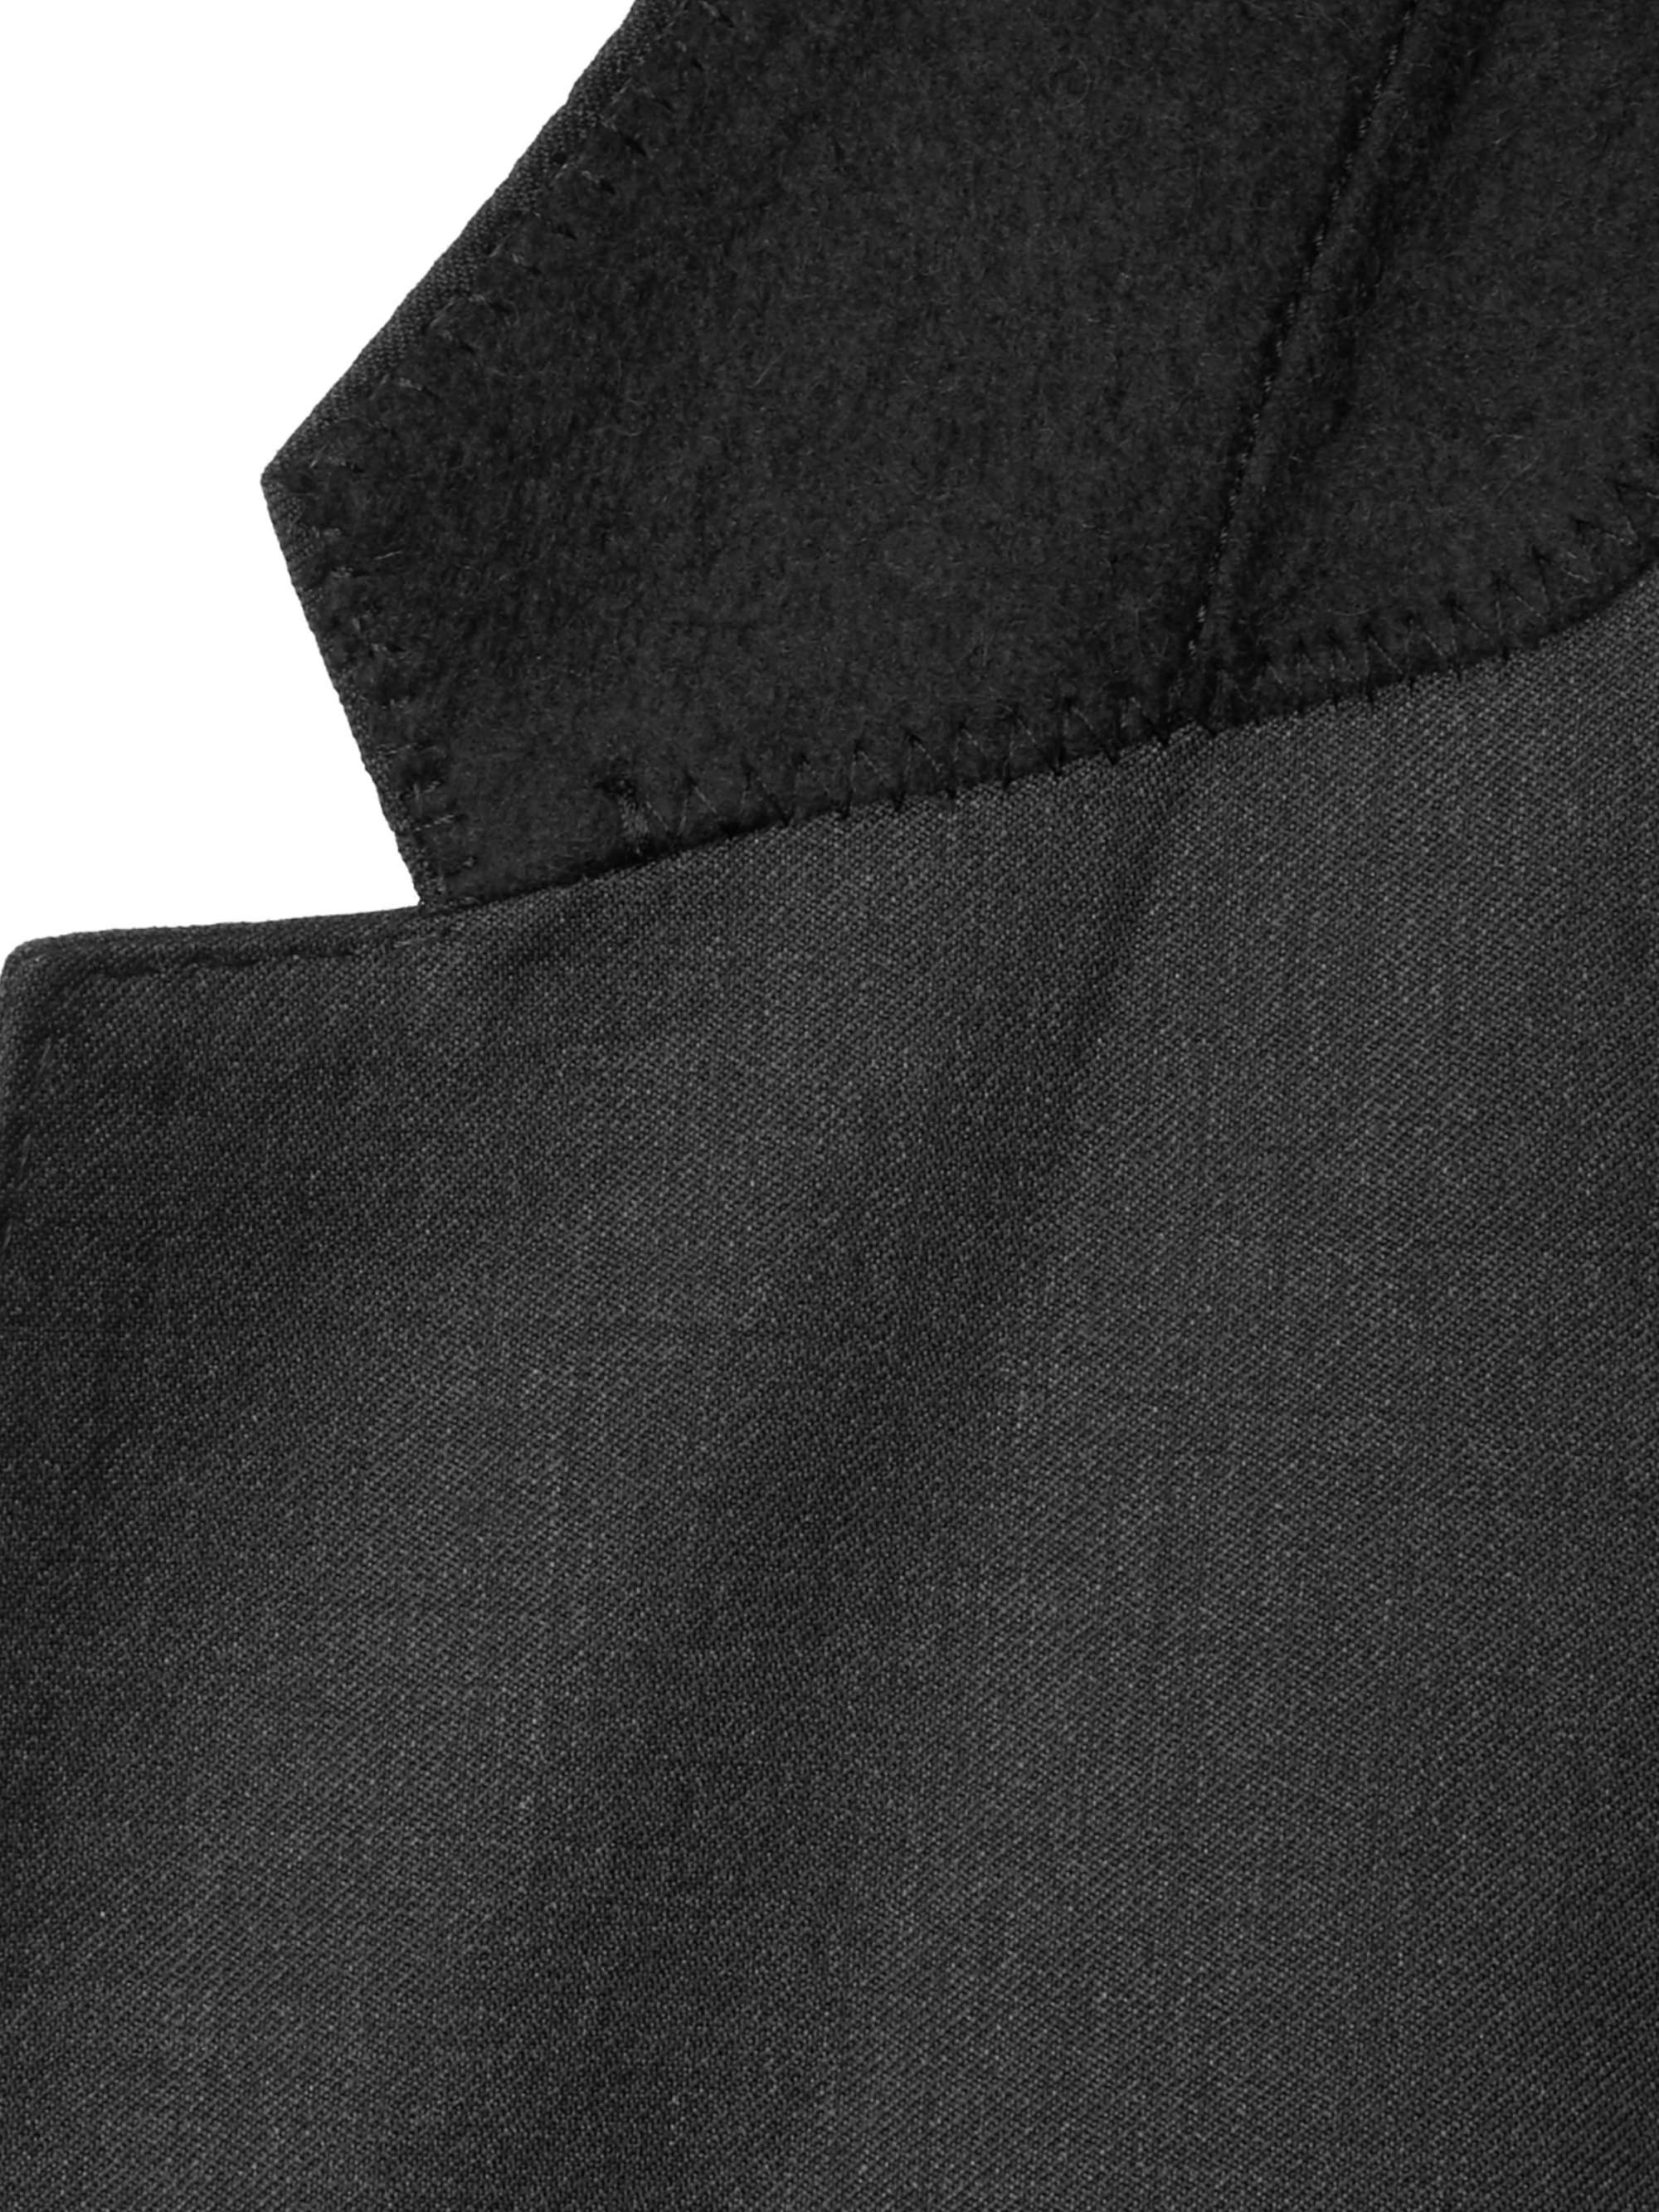 HUGO BOSS Grey Hayes Slim-Fit Super 120s Virgin Wool Suit Jacket for ...